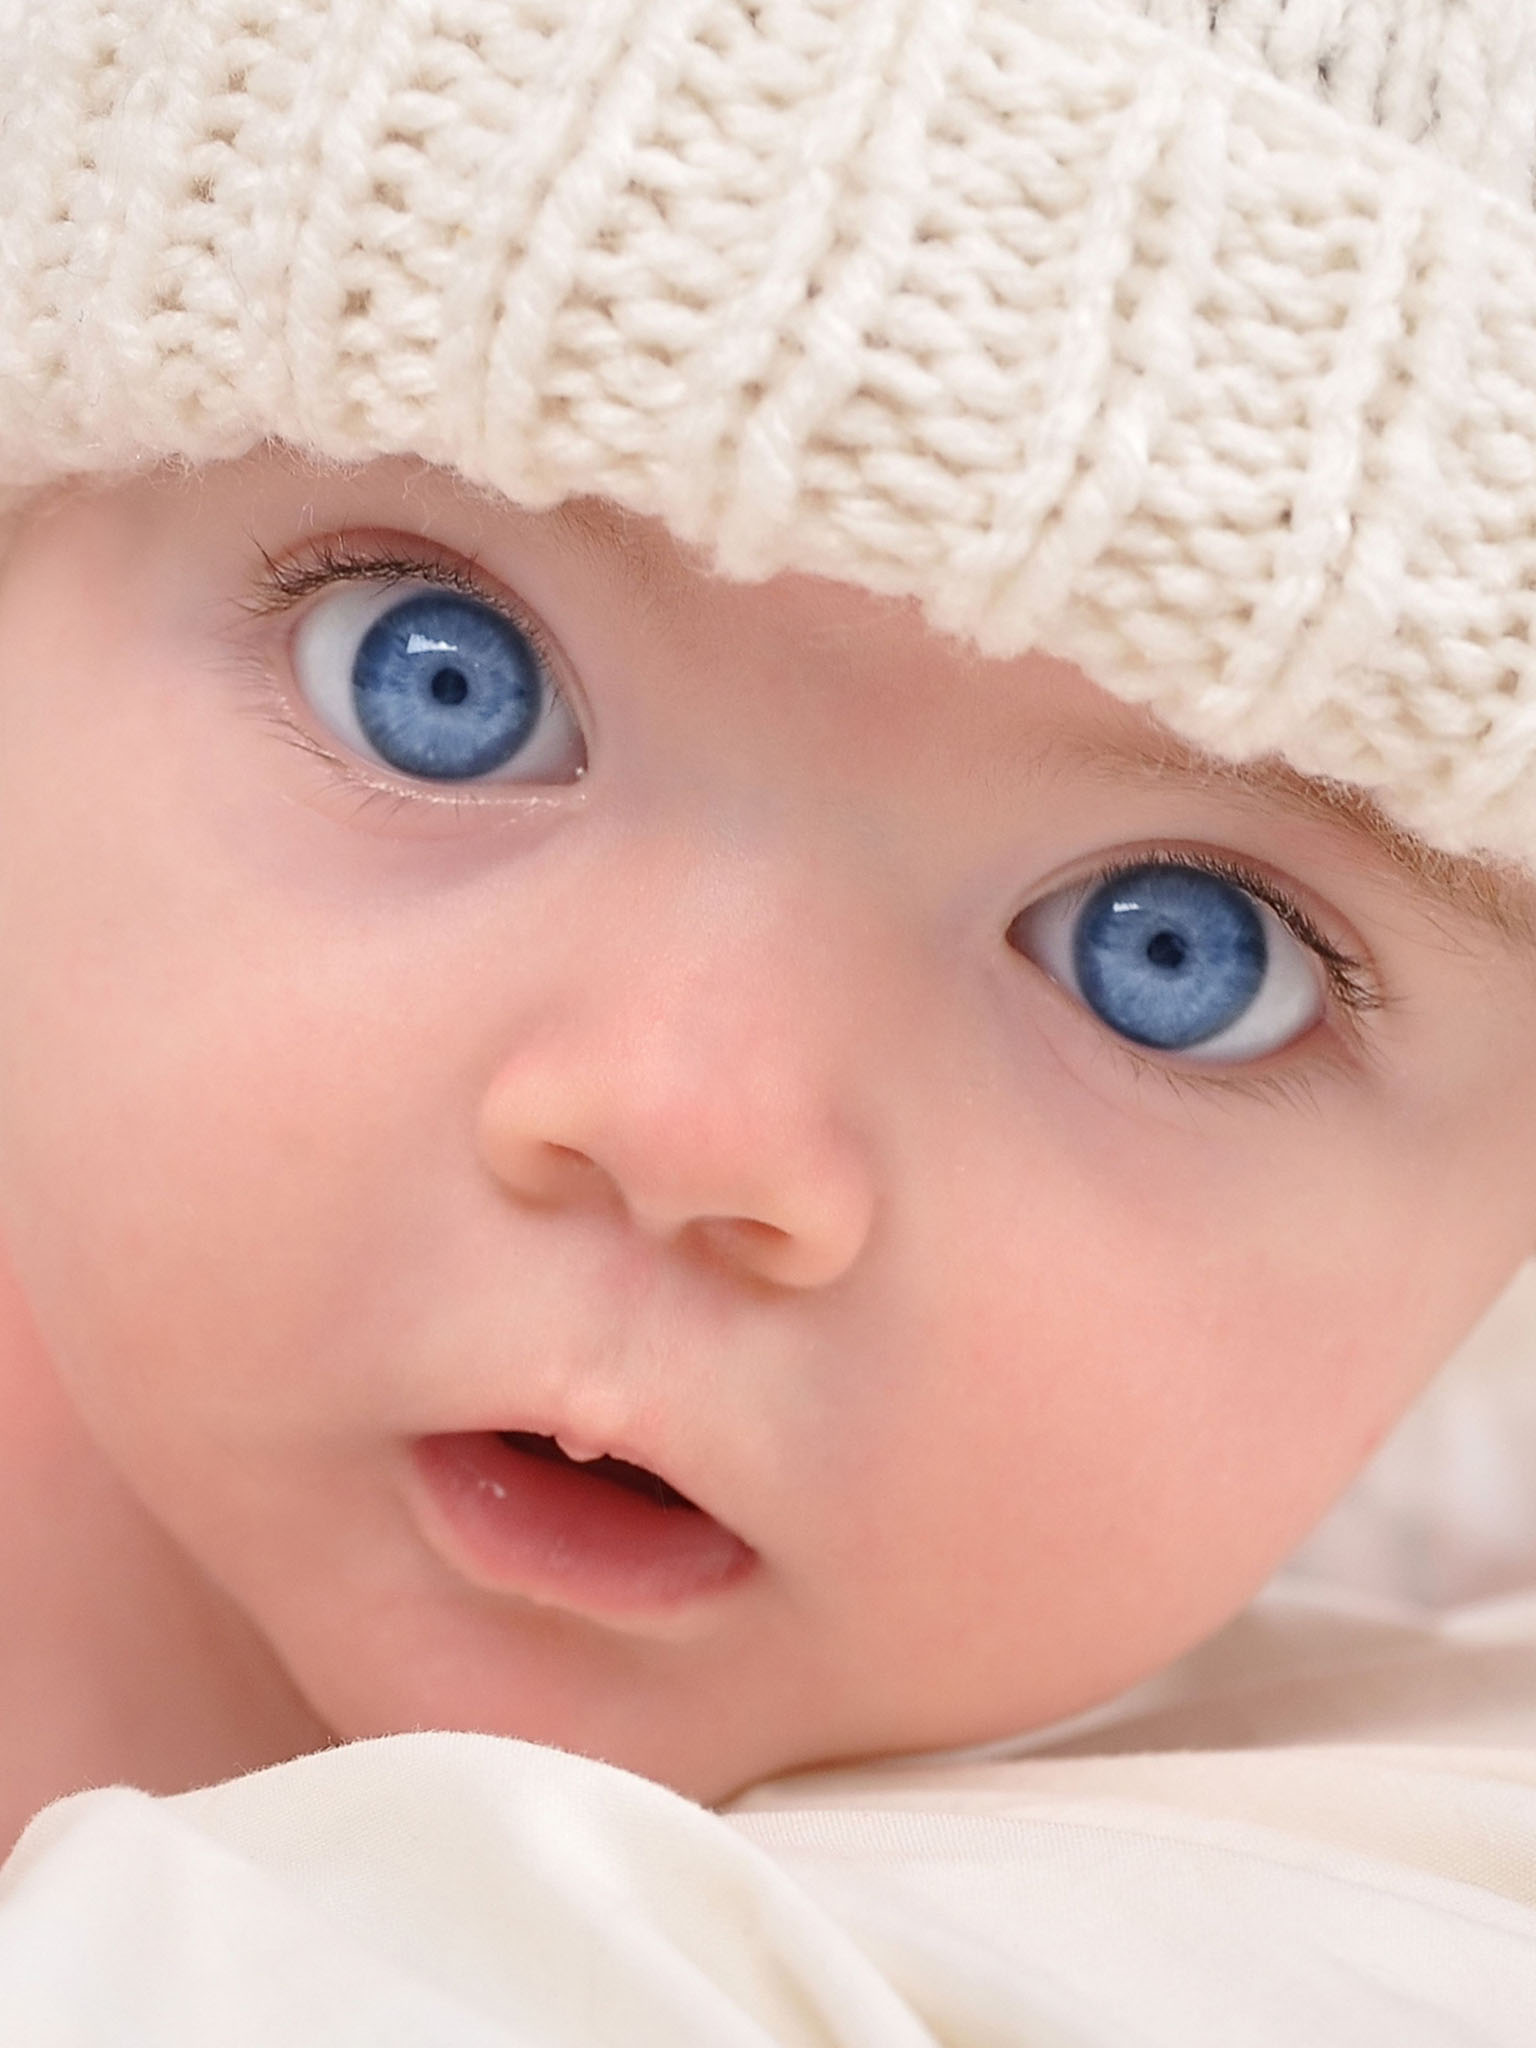 Скачать картинку Малыш с голубыми глазами